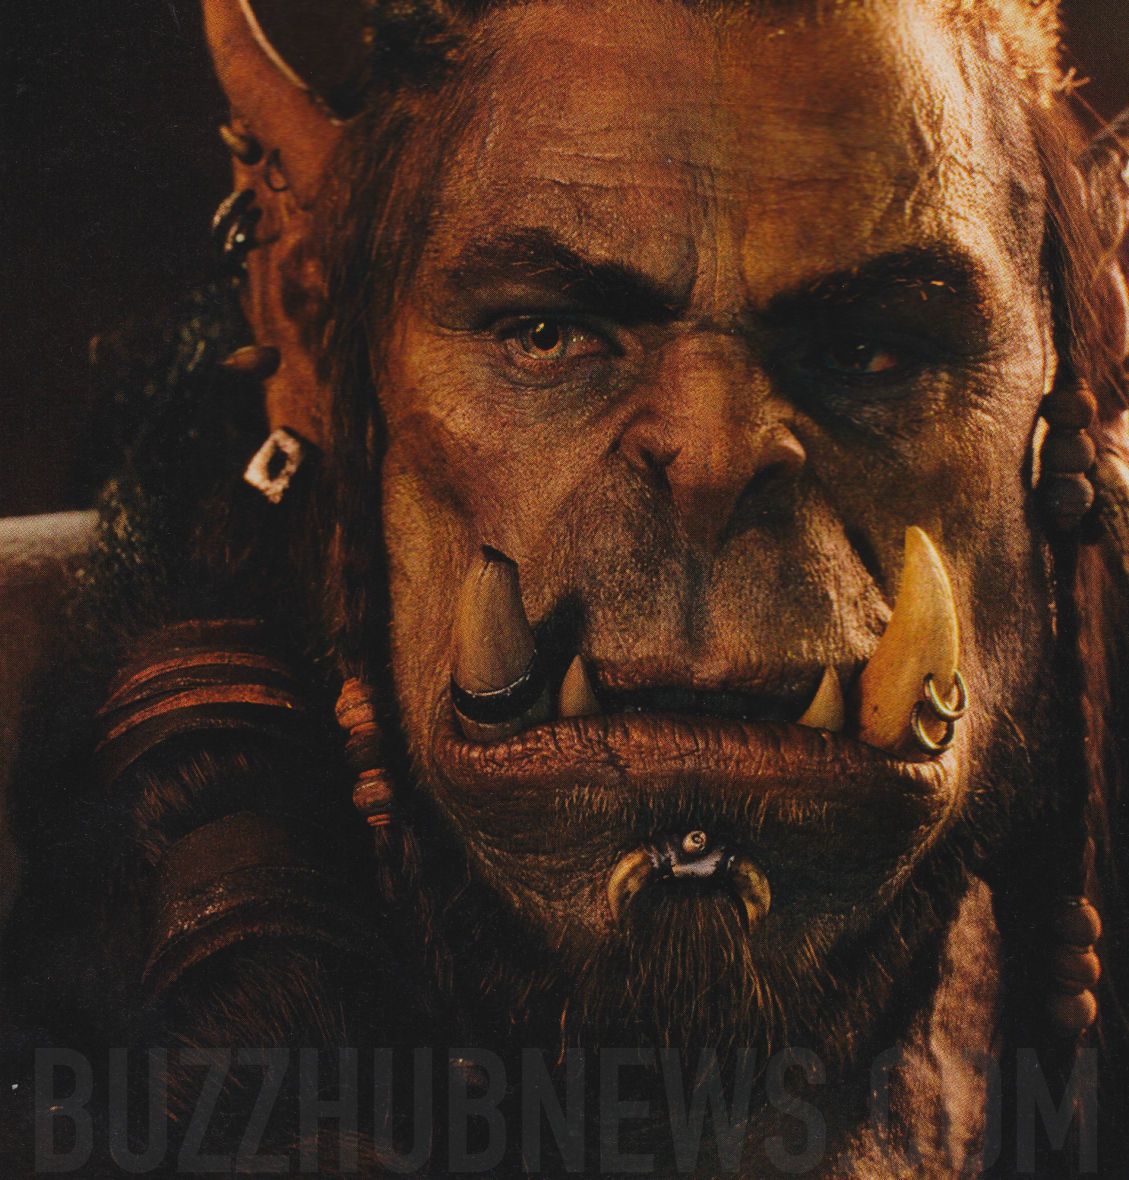 Warcraft - Toby Kebbell as Durotan